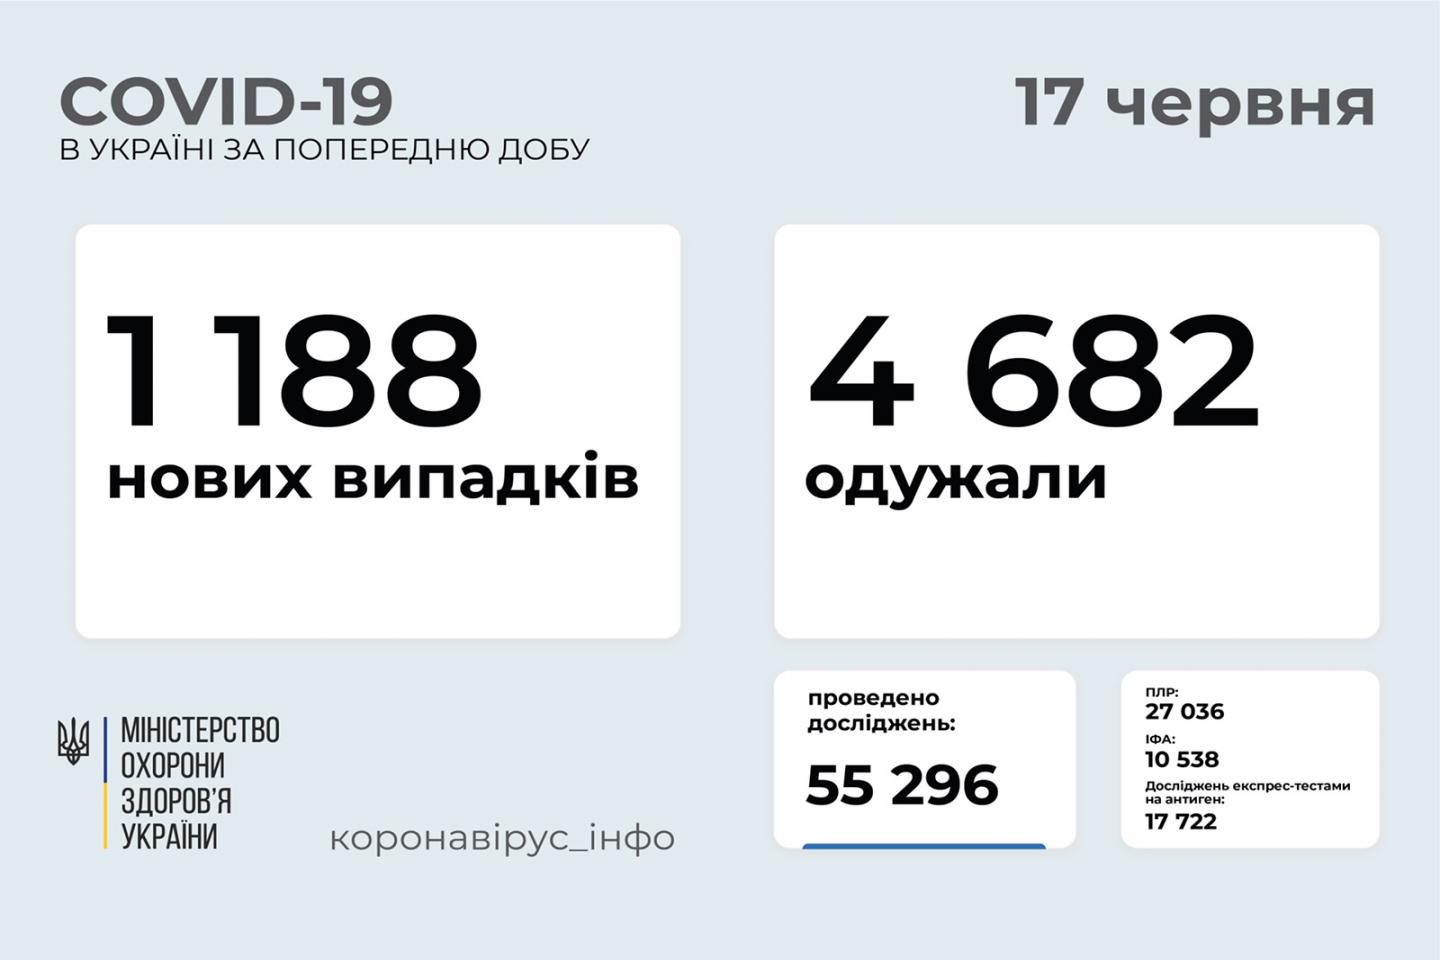 http://dunrada.gov.ua/uploadfile/archive_news/2021/06/17/2021-06-17_5105/images/images-21611.jpg